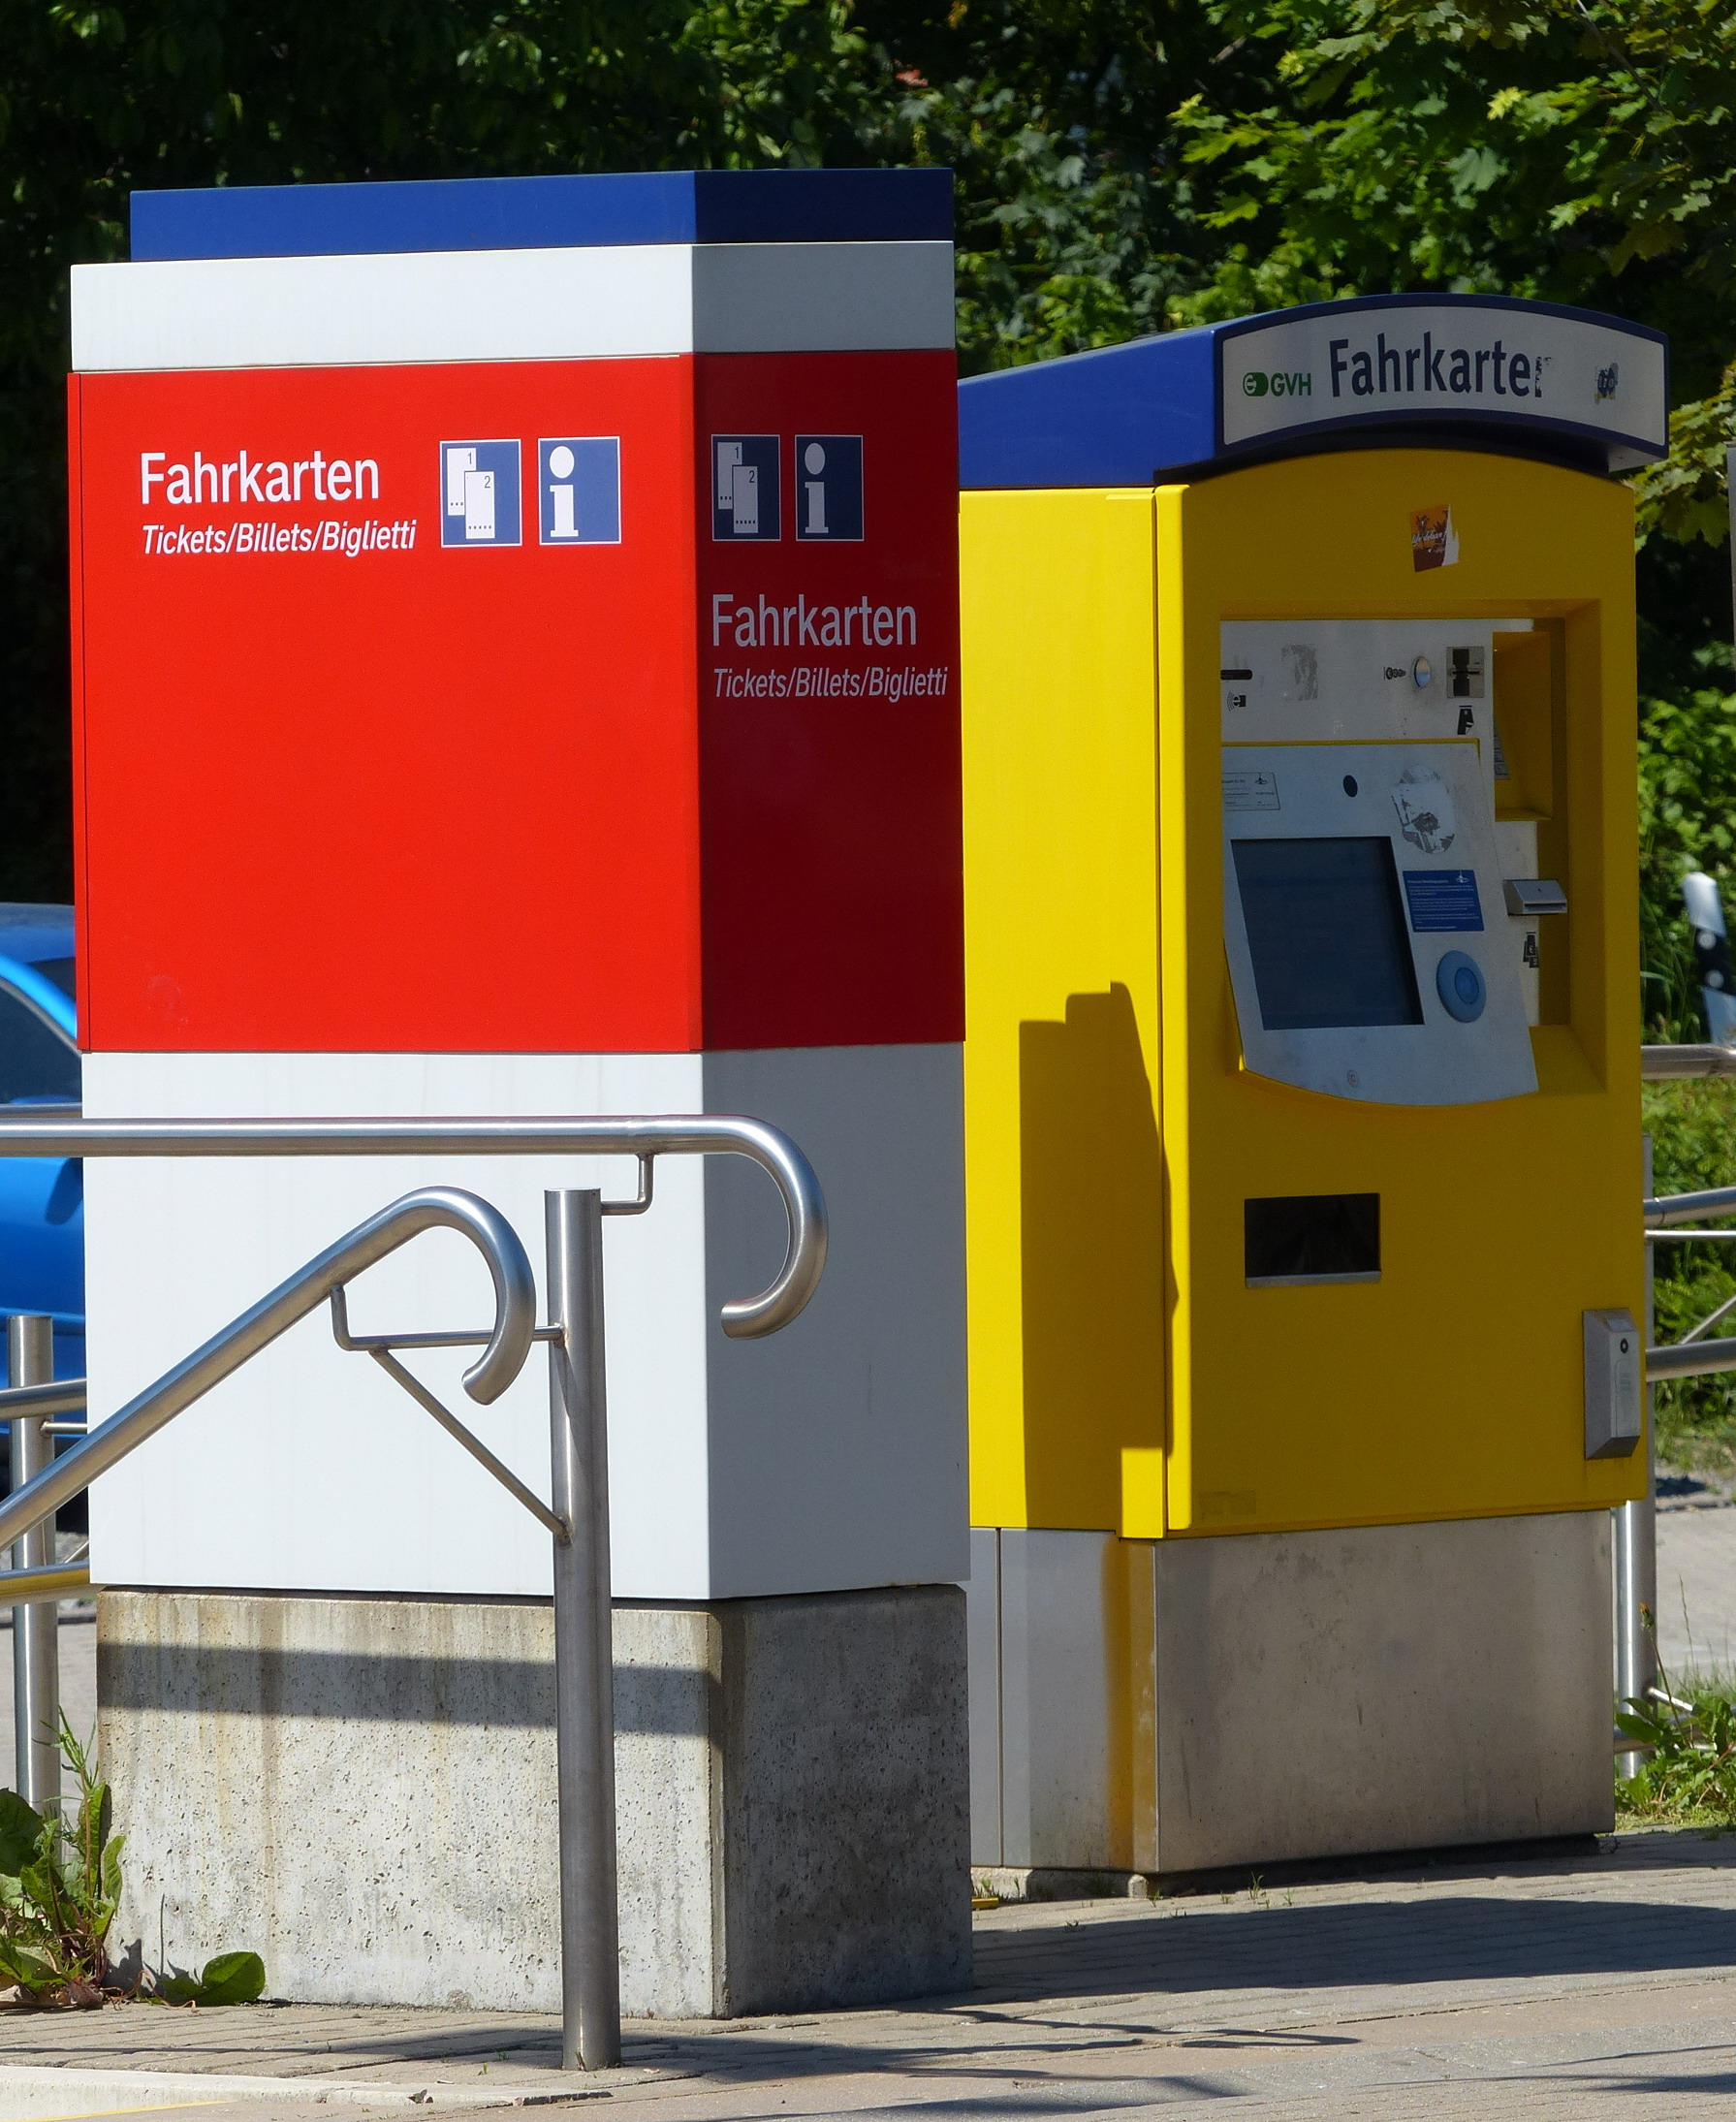 Zwei Fahrkartenautomaten unterschiedlicher Unternehmen nebeneinander